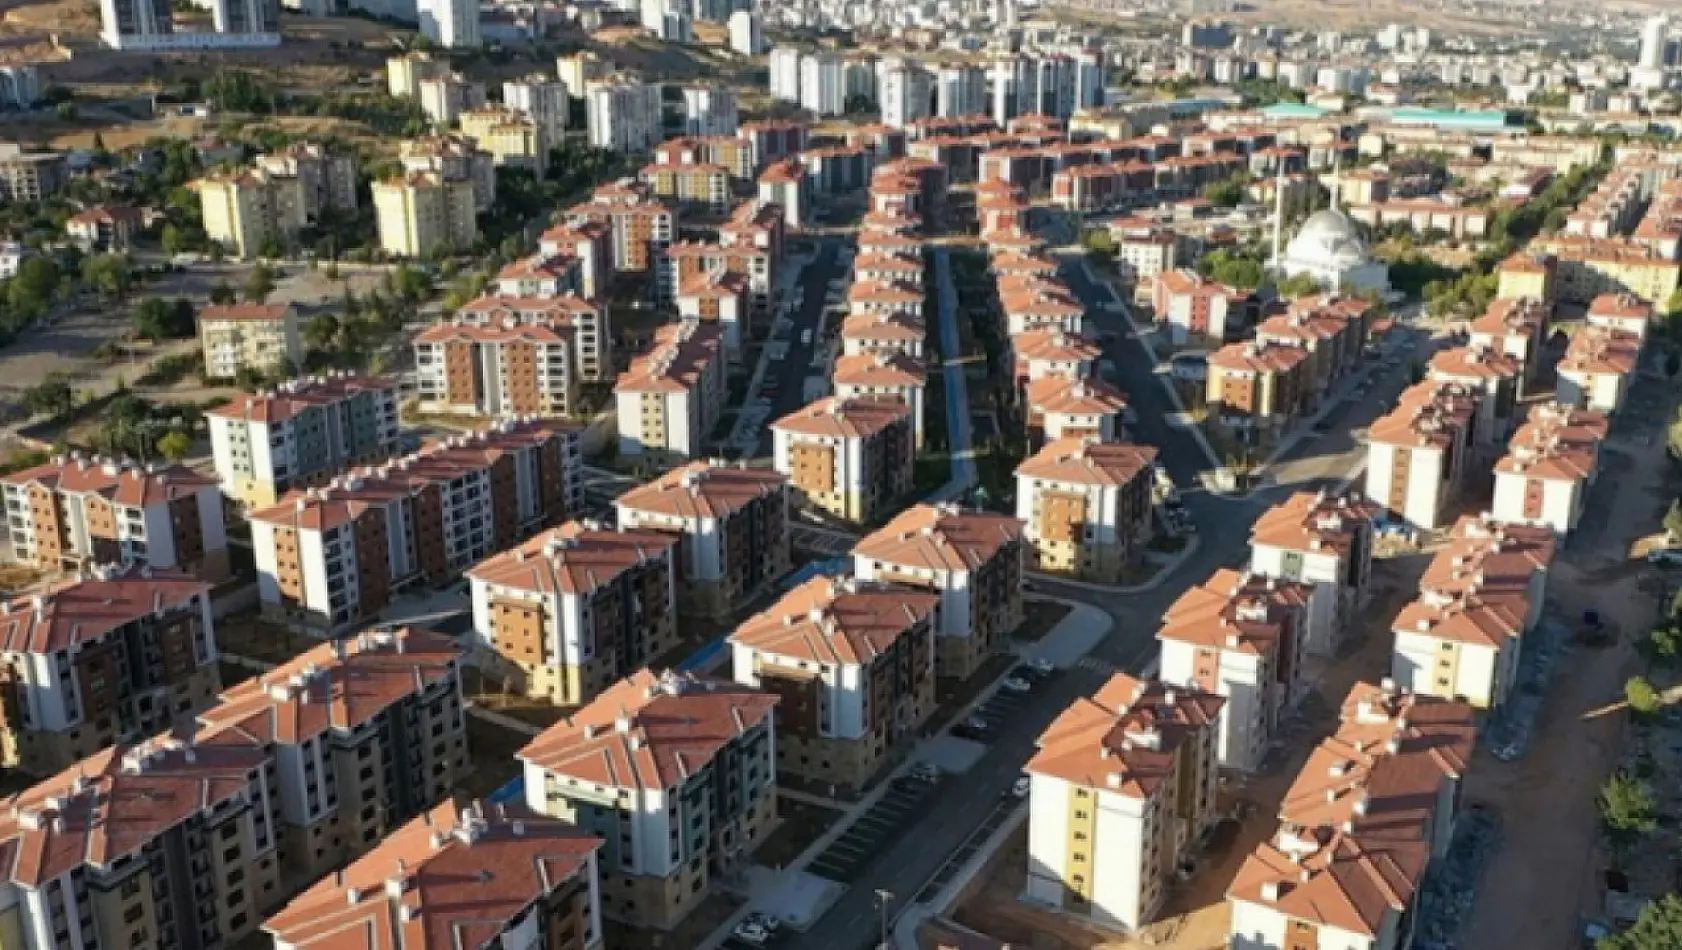 Elazığ'da Ucuz mu Ucuz Evlerin Satışı Başladı: Acele Edin!